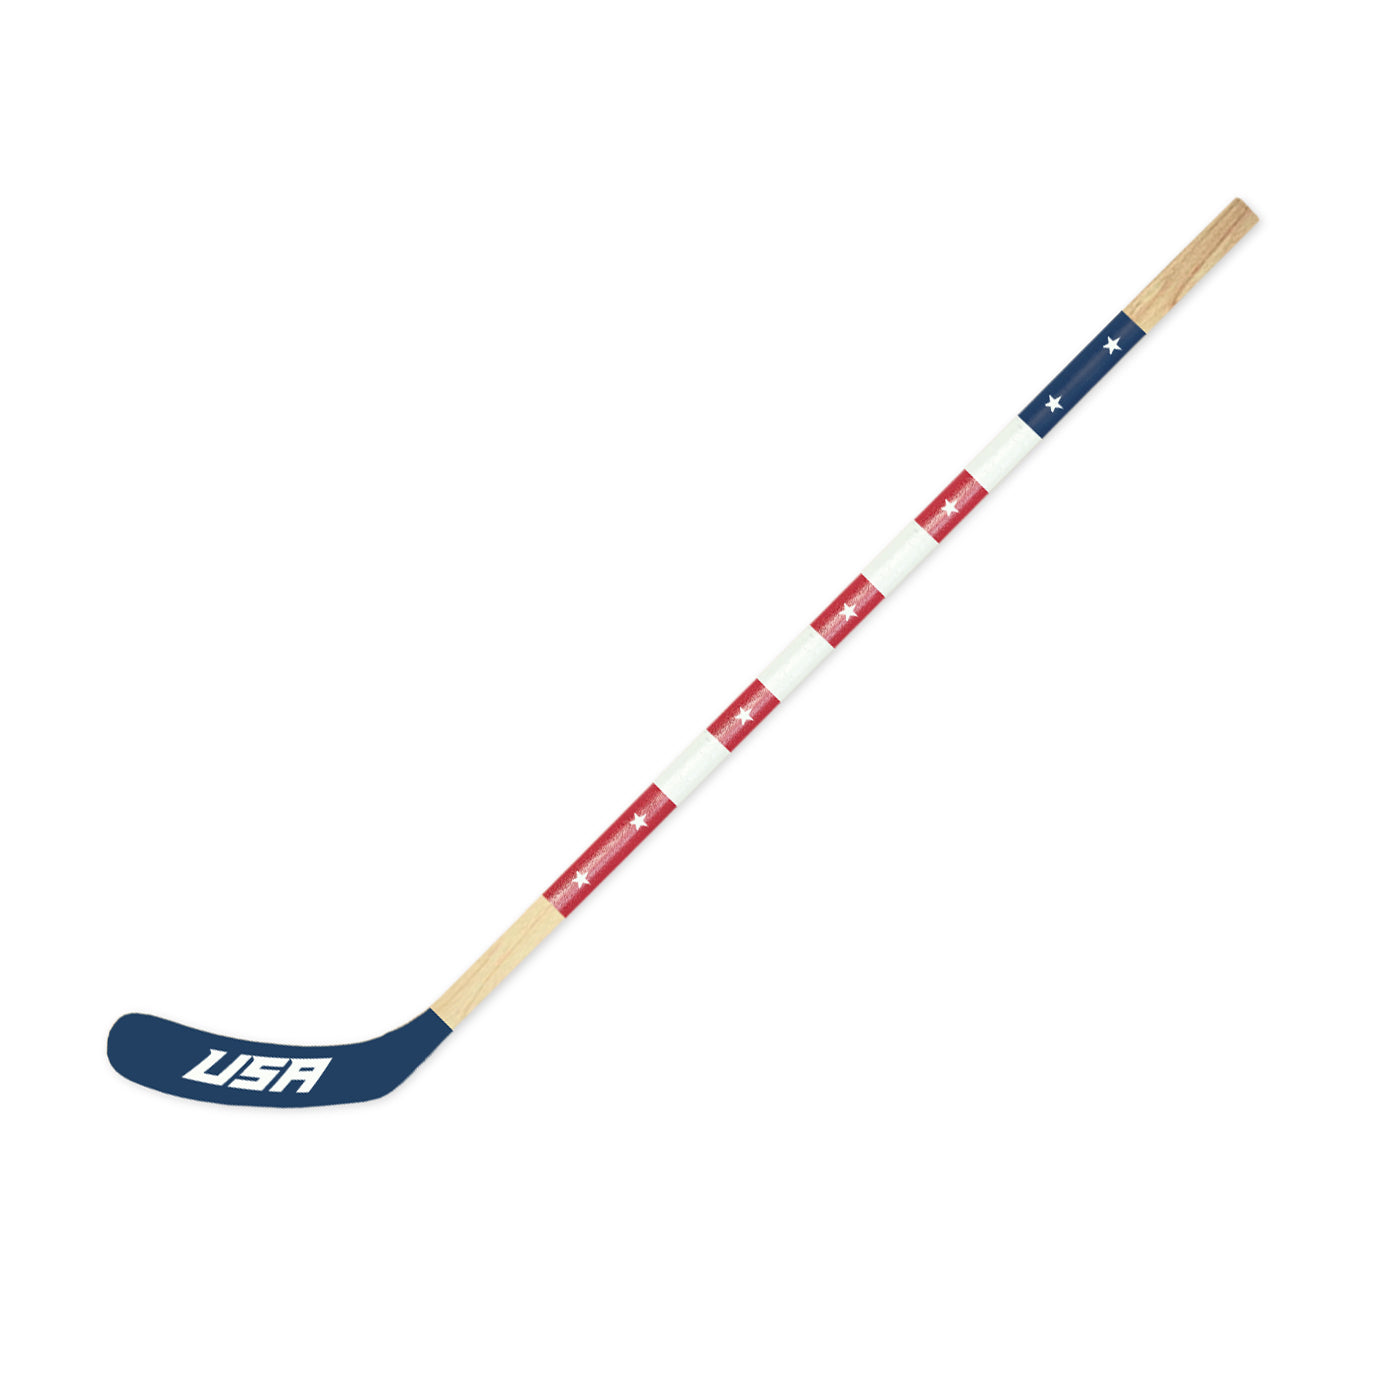 USA Mitchell Hockey Stick